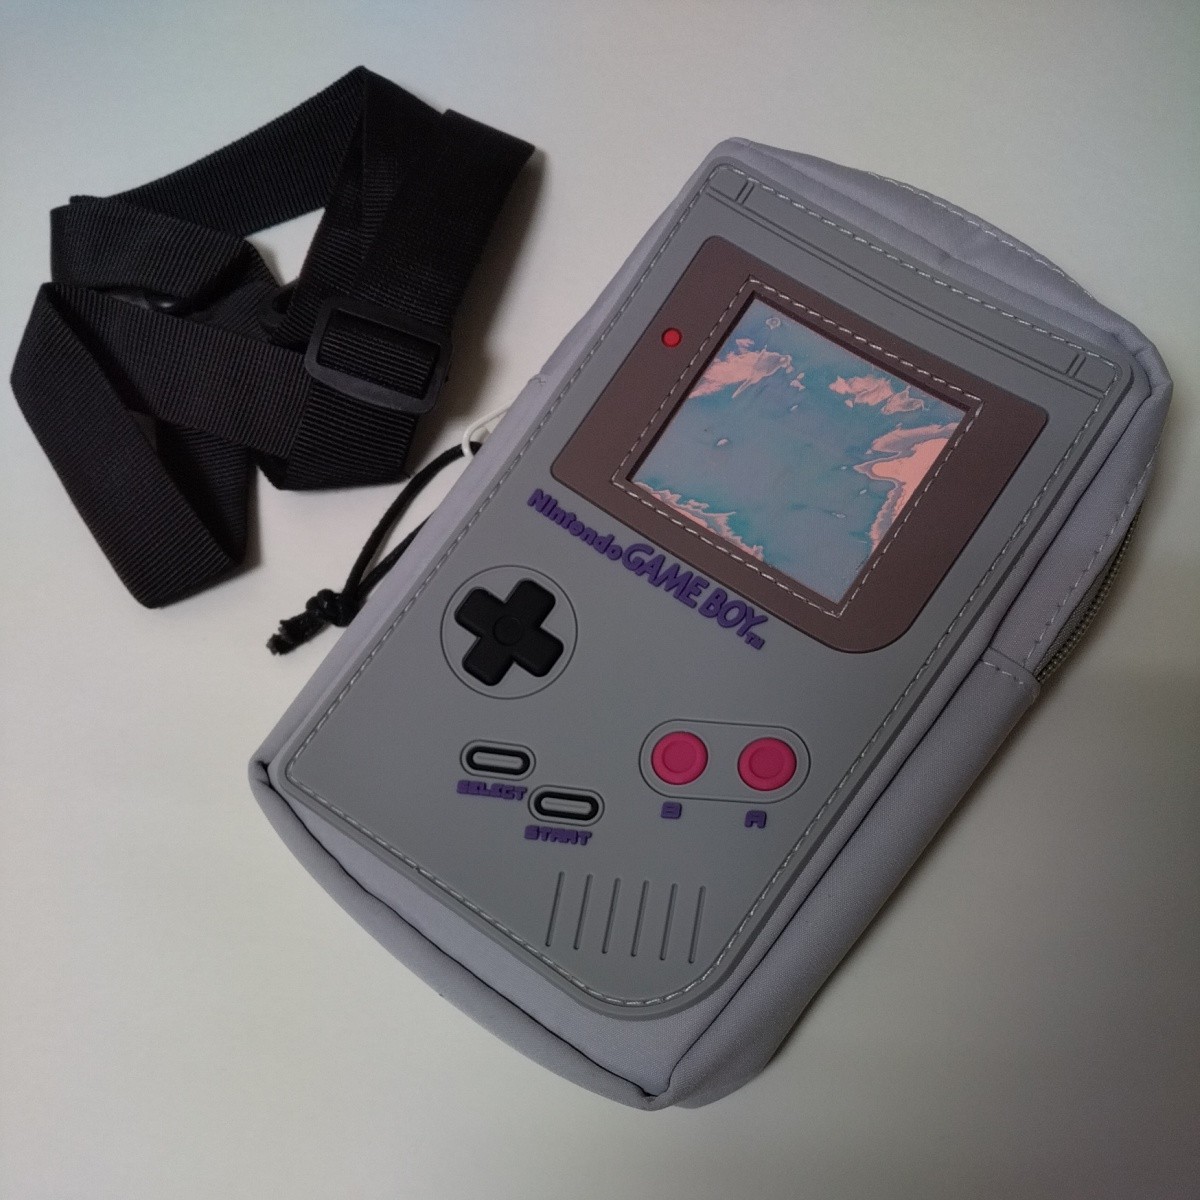 未使用品 Nintendo GAME BOY ショルダーバッグ 肩掛けカバン サコッシュ 任天堂 初代ゲームボーイ 本体デザイン ライトグレー ザラ ZARA 鞄_画像1